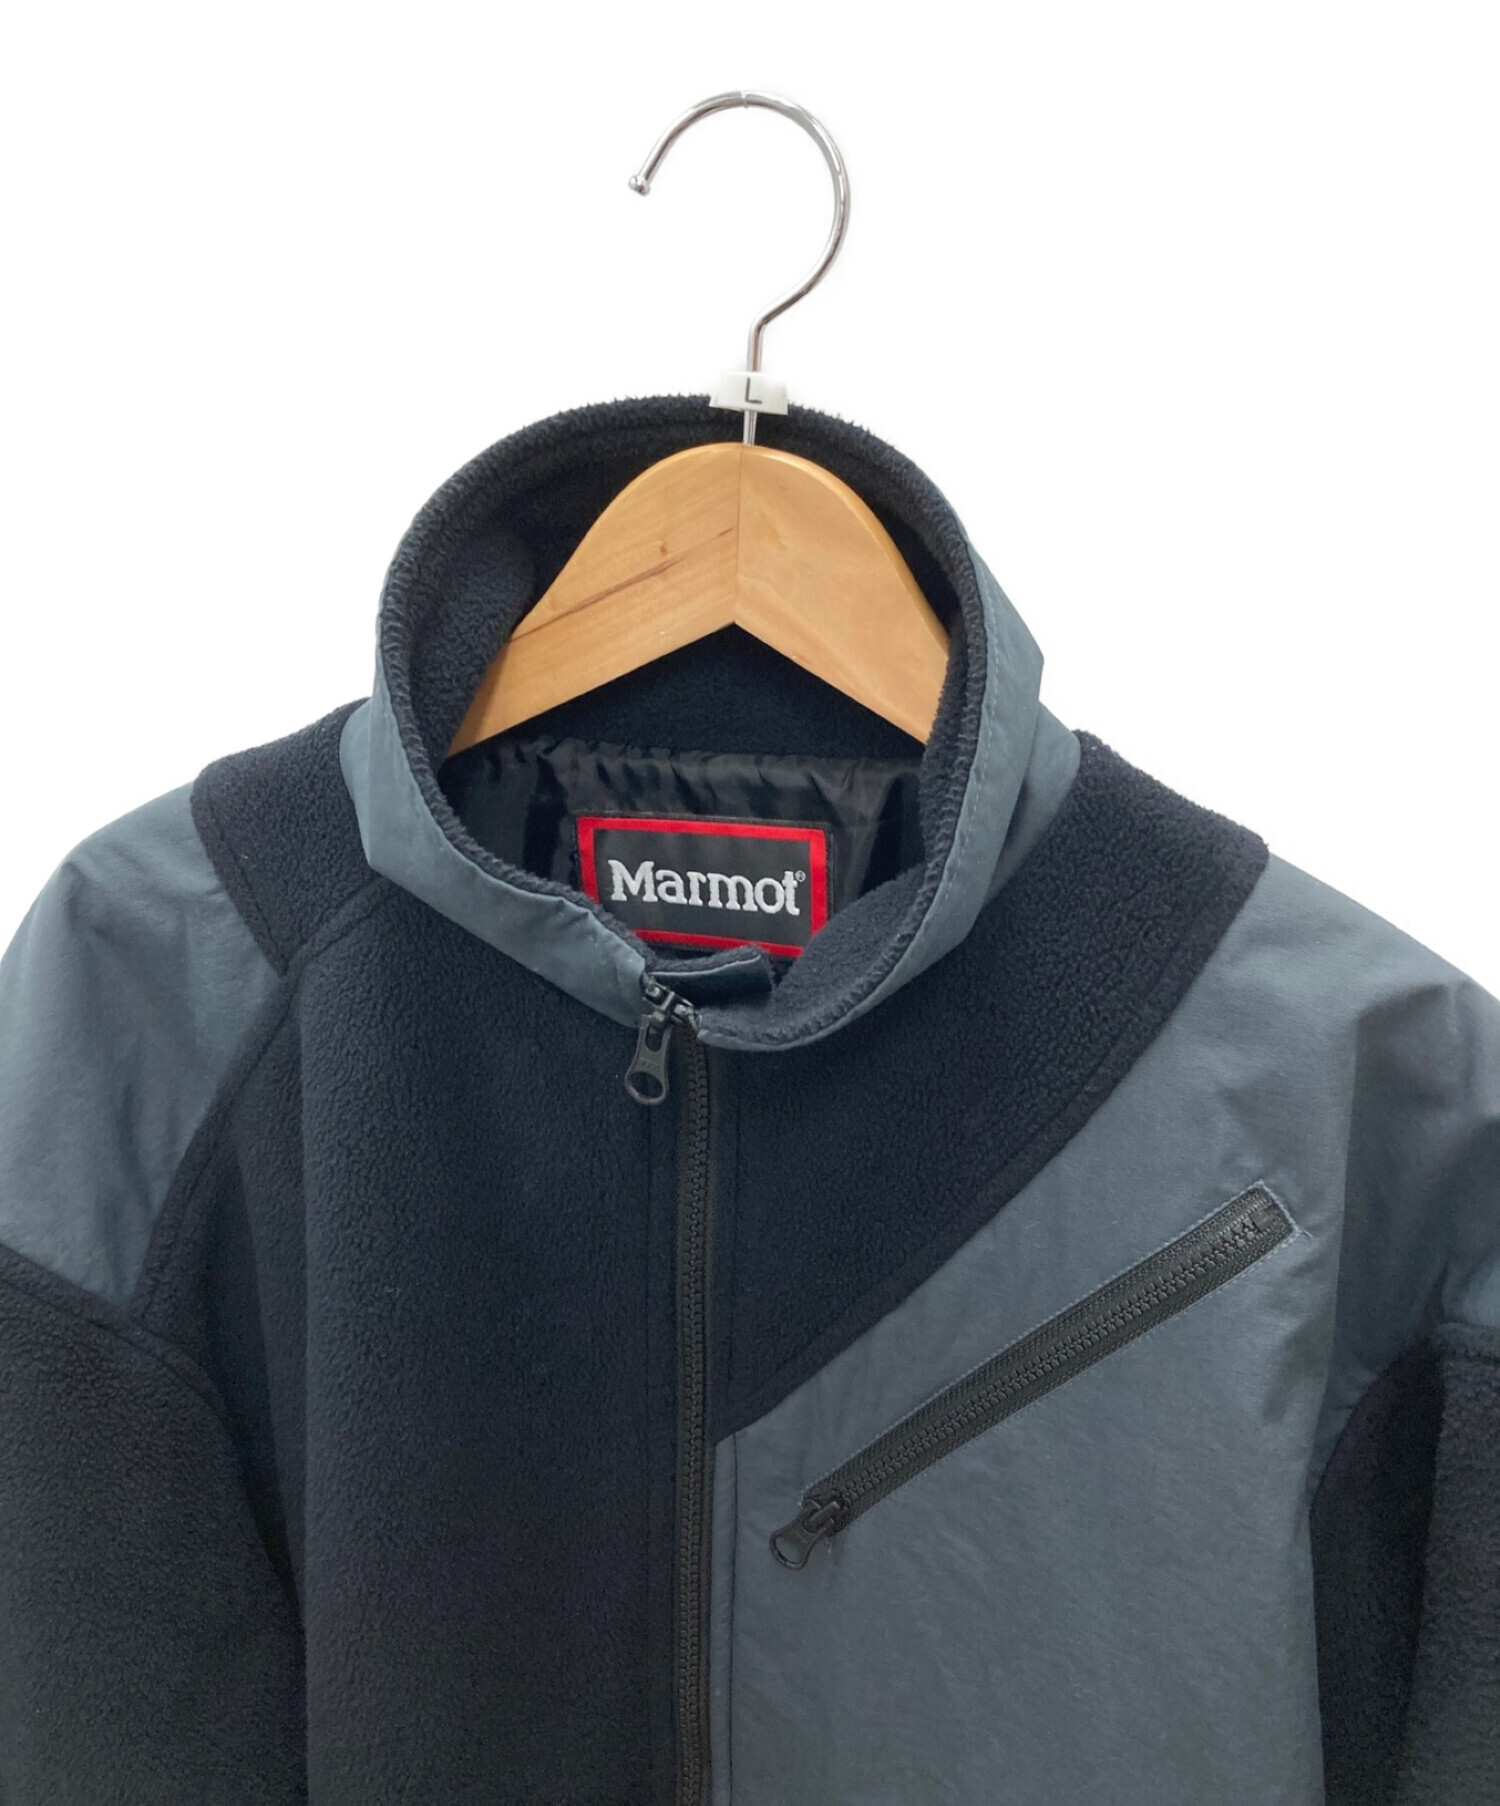 Marmot (マーモット) フリースジャケット ブラック サイズ:L